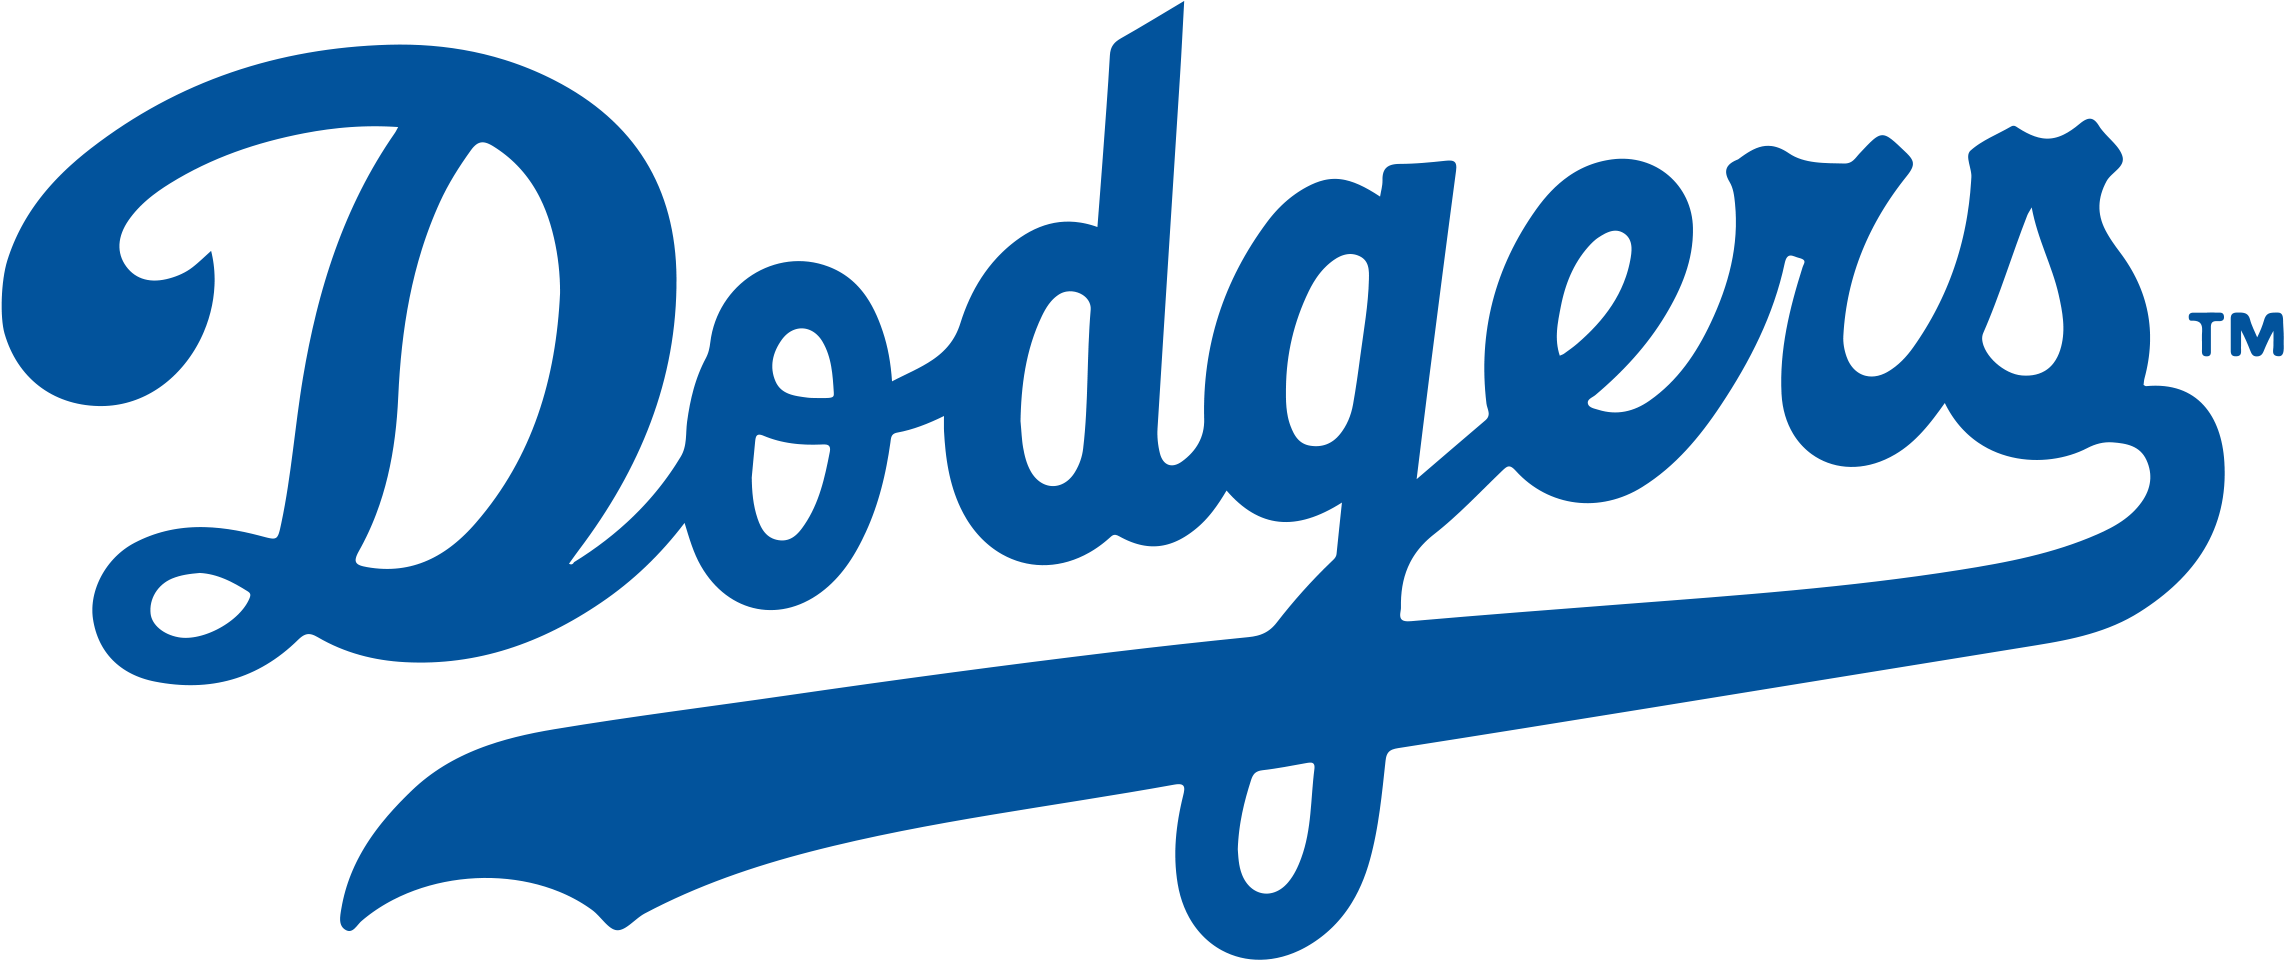 Brooklyn Los Angeles Dodgers Chicago Cubs Mlb Logo - Brooklyn Dodgers Logo.